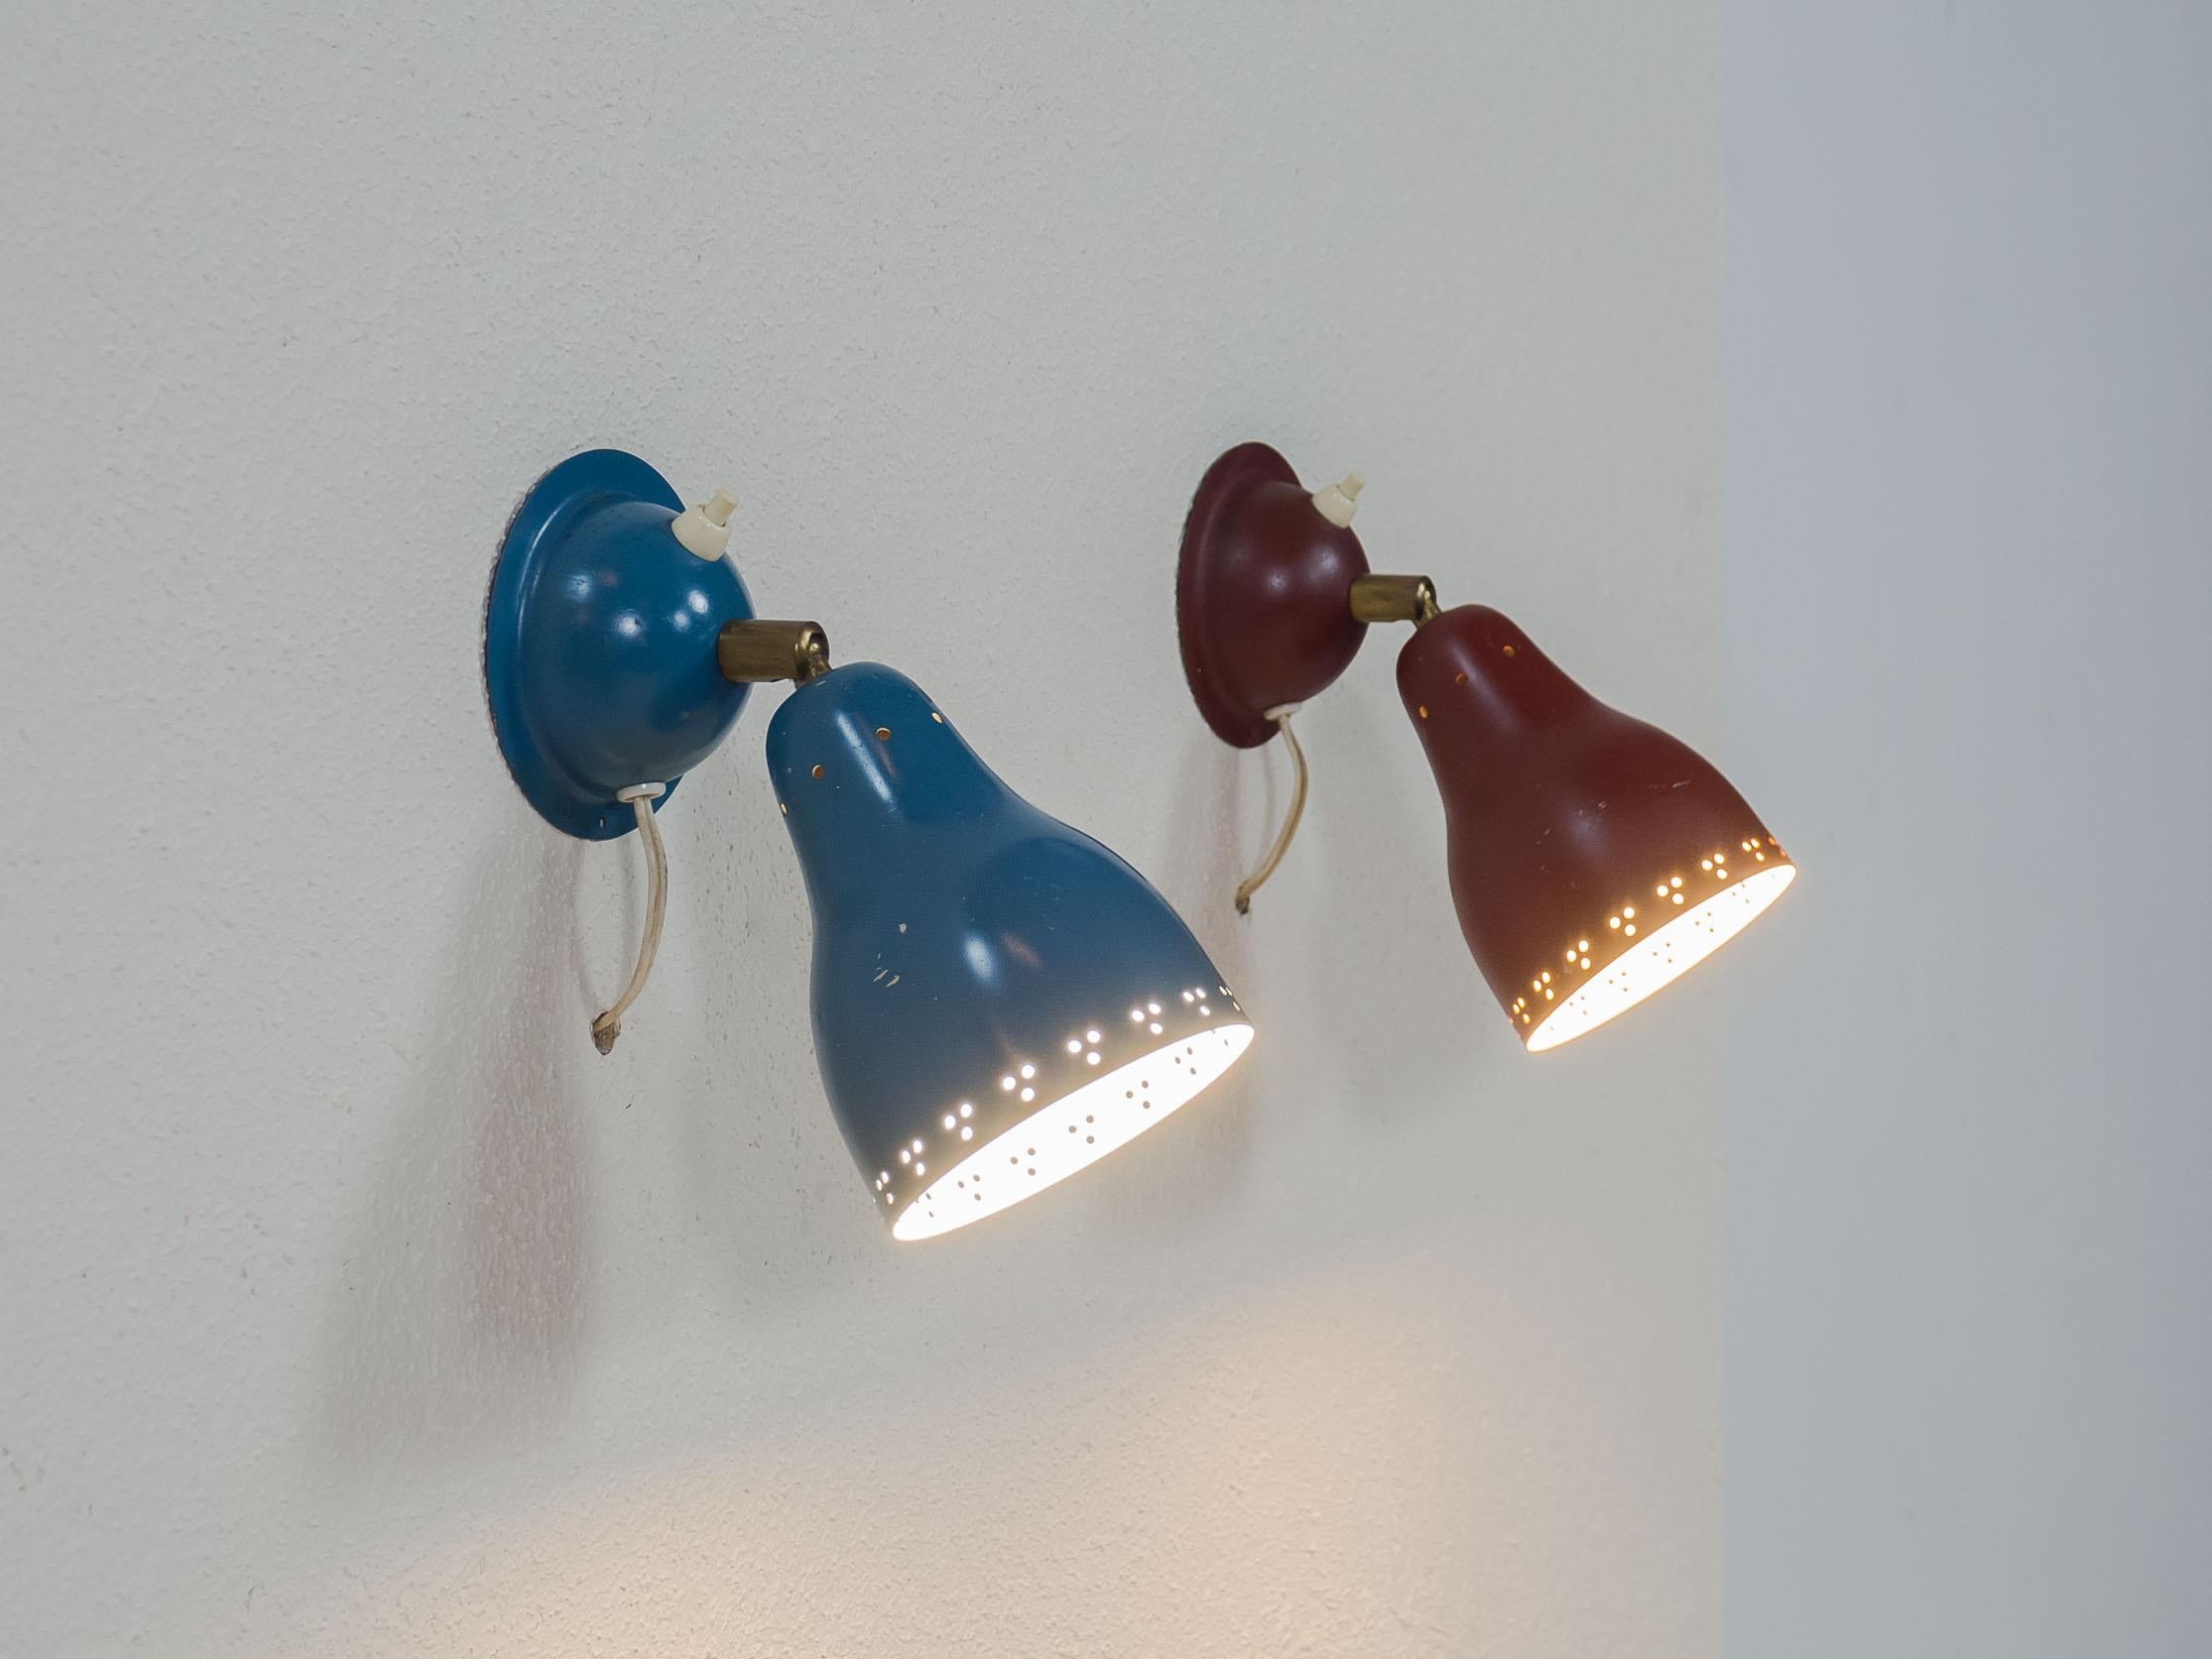 Ensemble de deux appliques suédoises, probablement des années 1950.

Les deux lampes sont dans leur laque bleue et rouge d'origine, et ont leurs interrupteurs et pivots d'origine. Ils peuvent être fixés au mur à l'aide d'une seule vis.

Les lampes